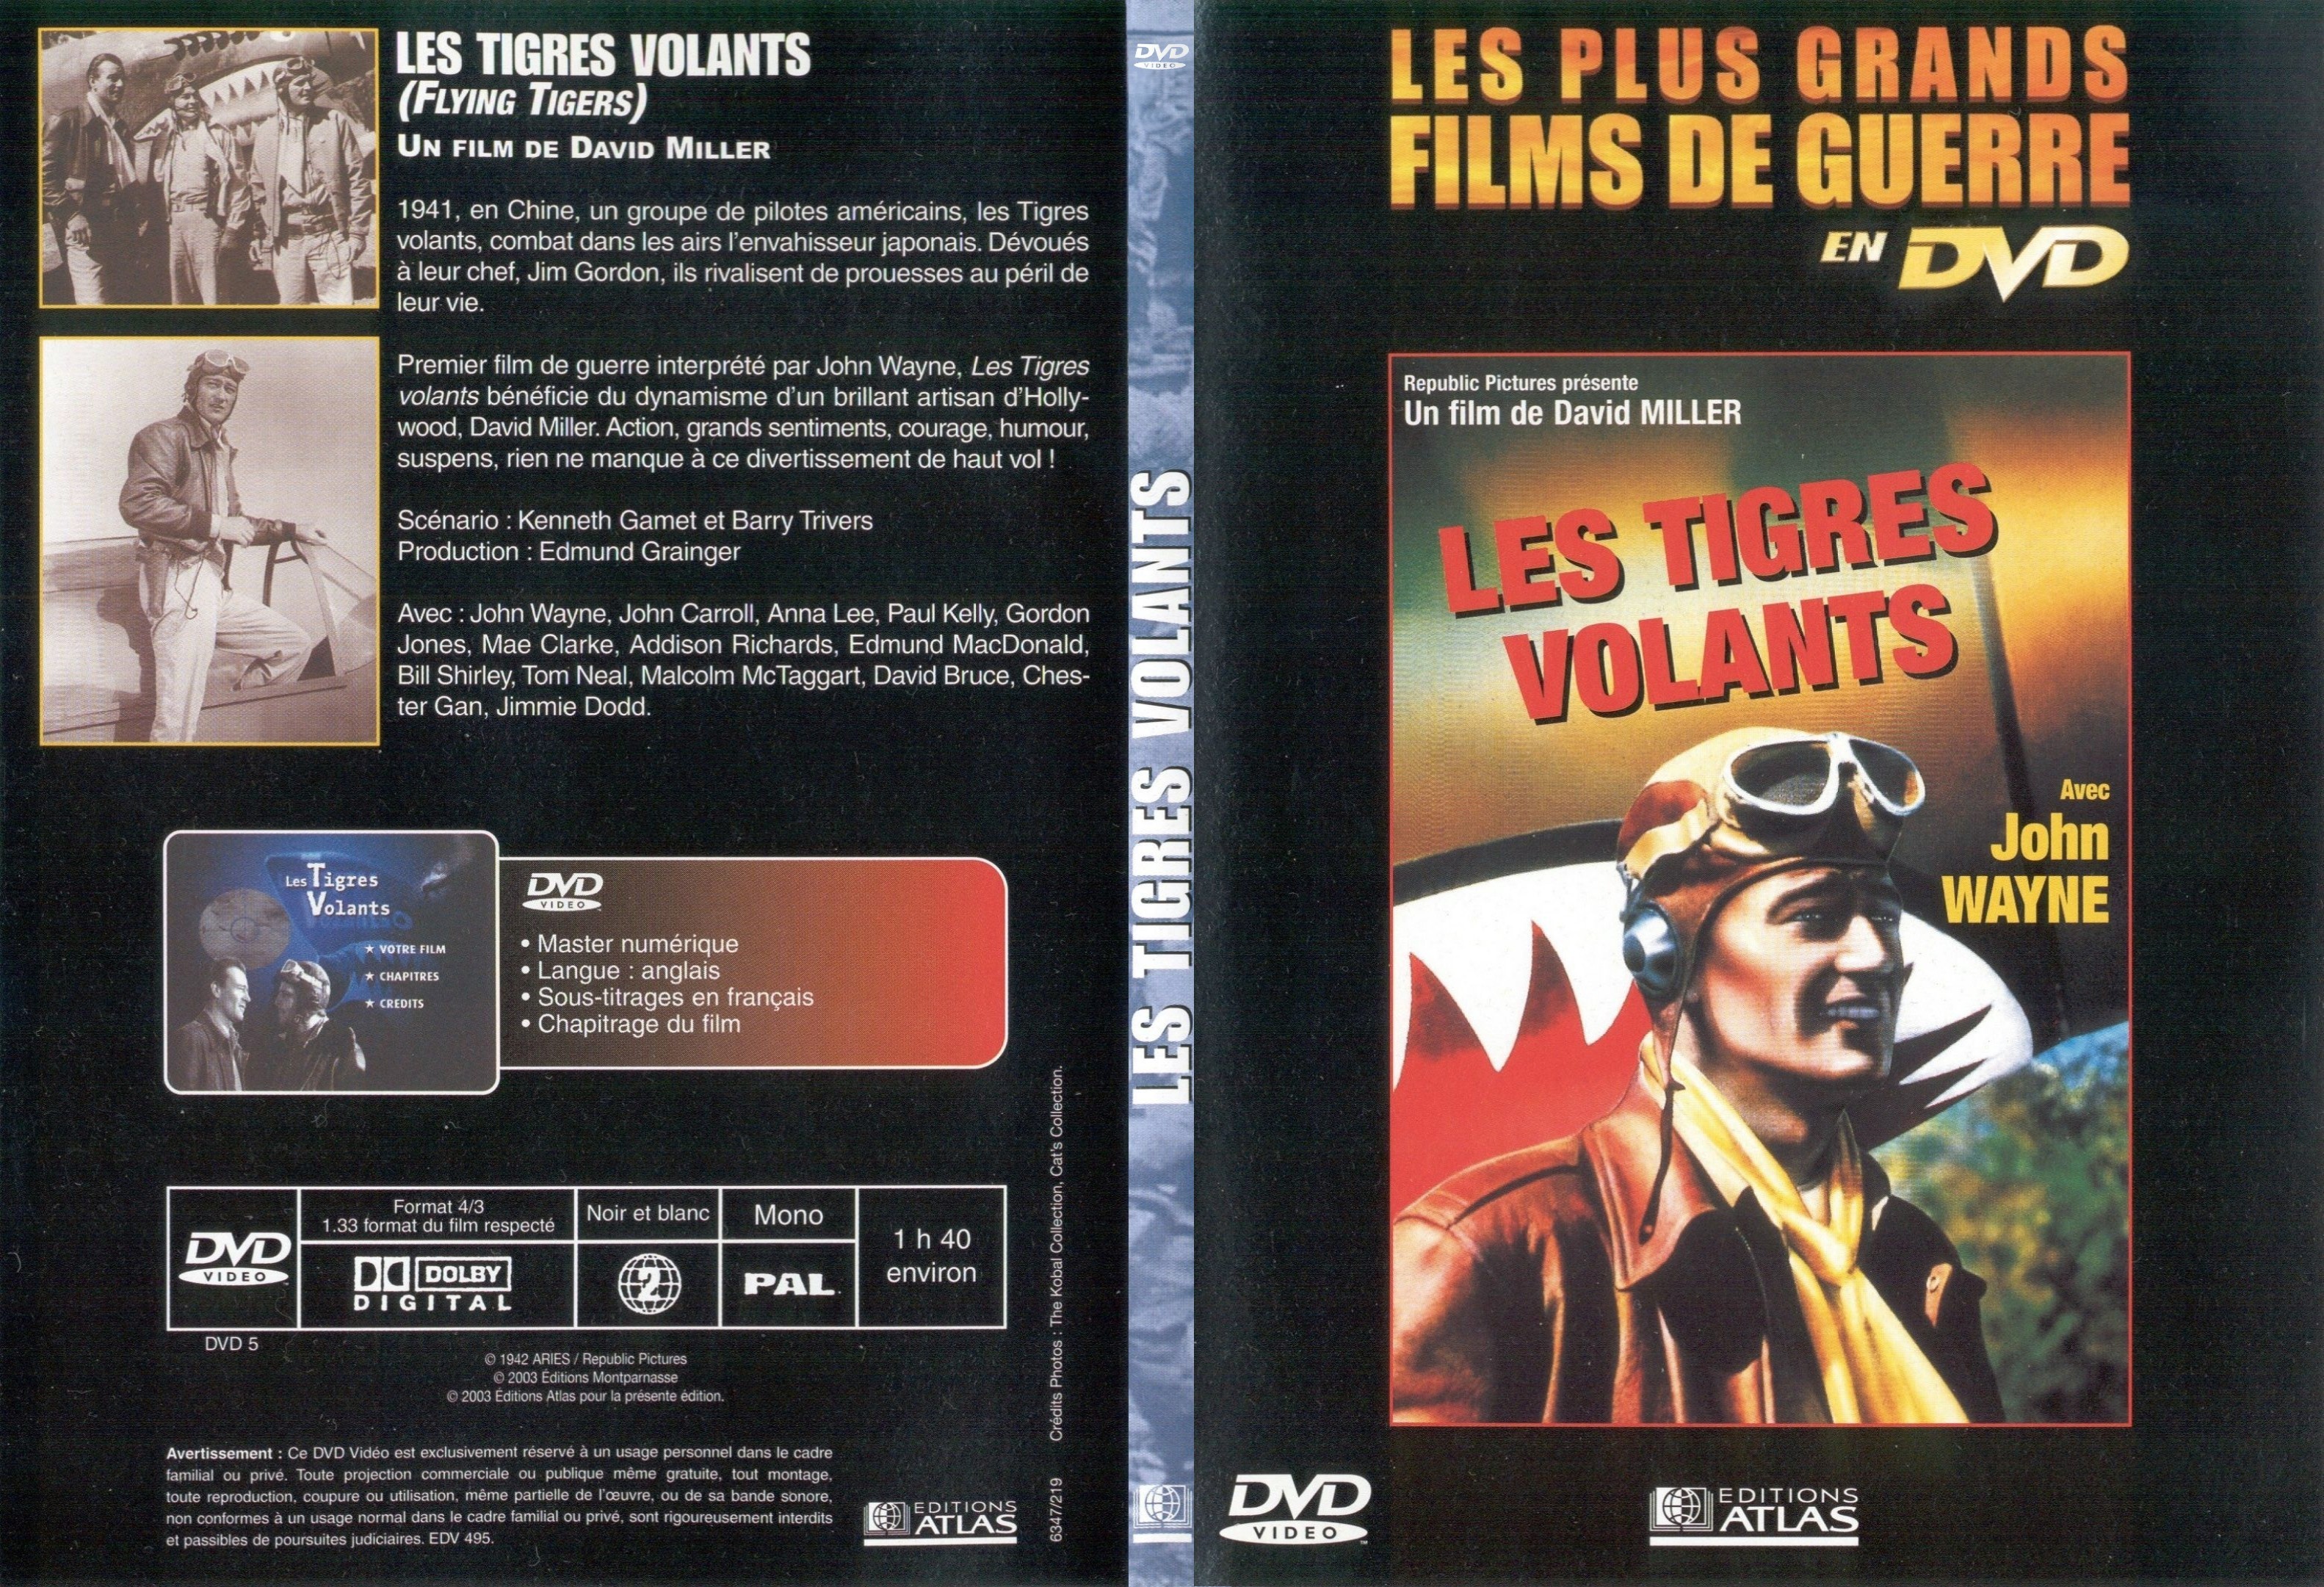 Jaquette DVD Les tigres volants - SLIM